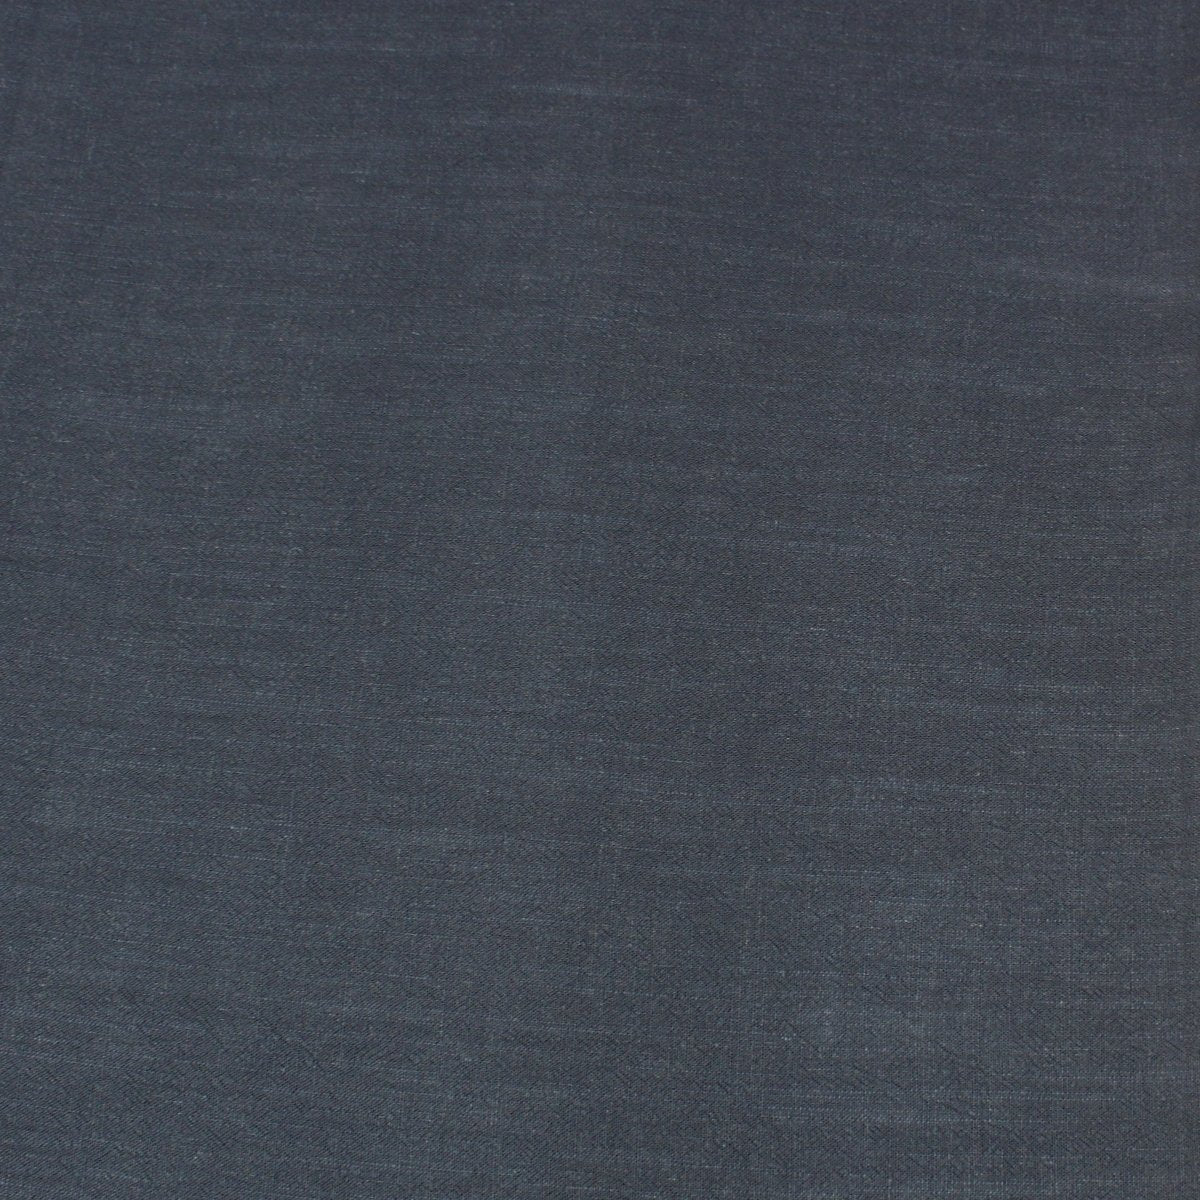 3 Metres Medium Weight Viscose-Linen Blend Fabric 55" Wide - Navy - Pound A Metre